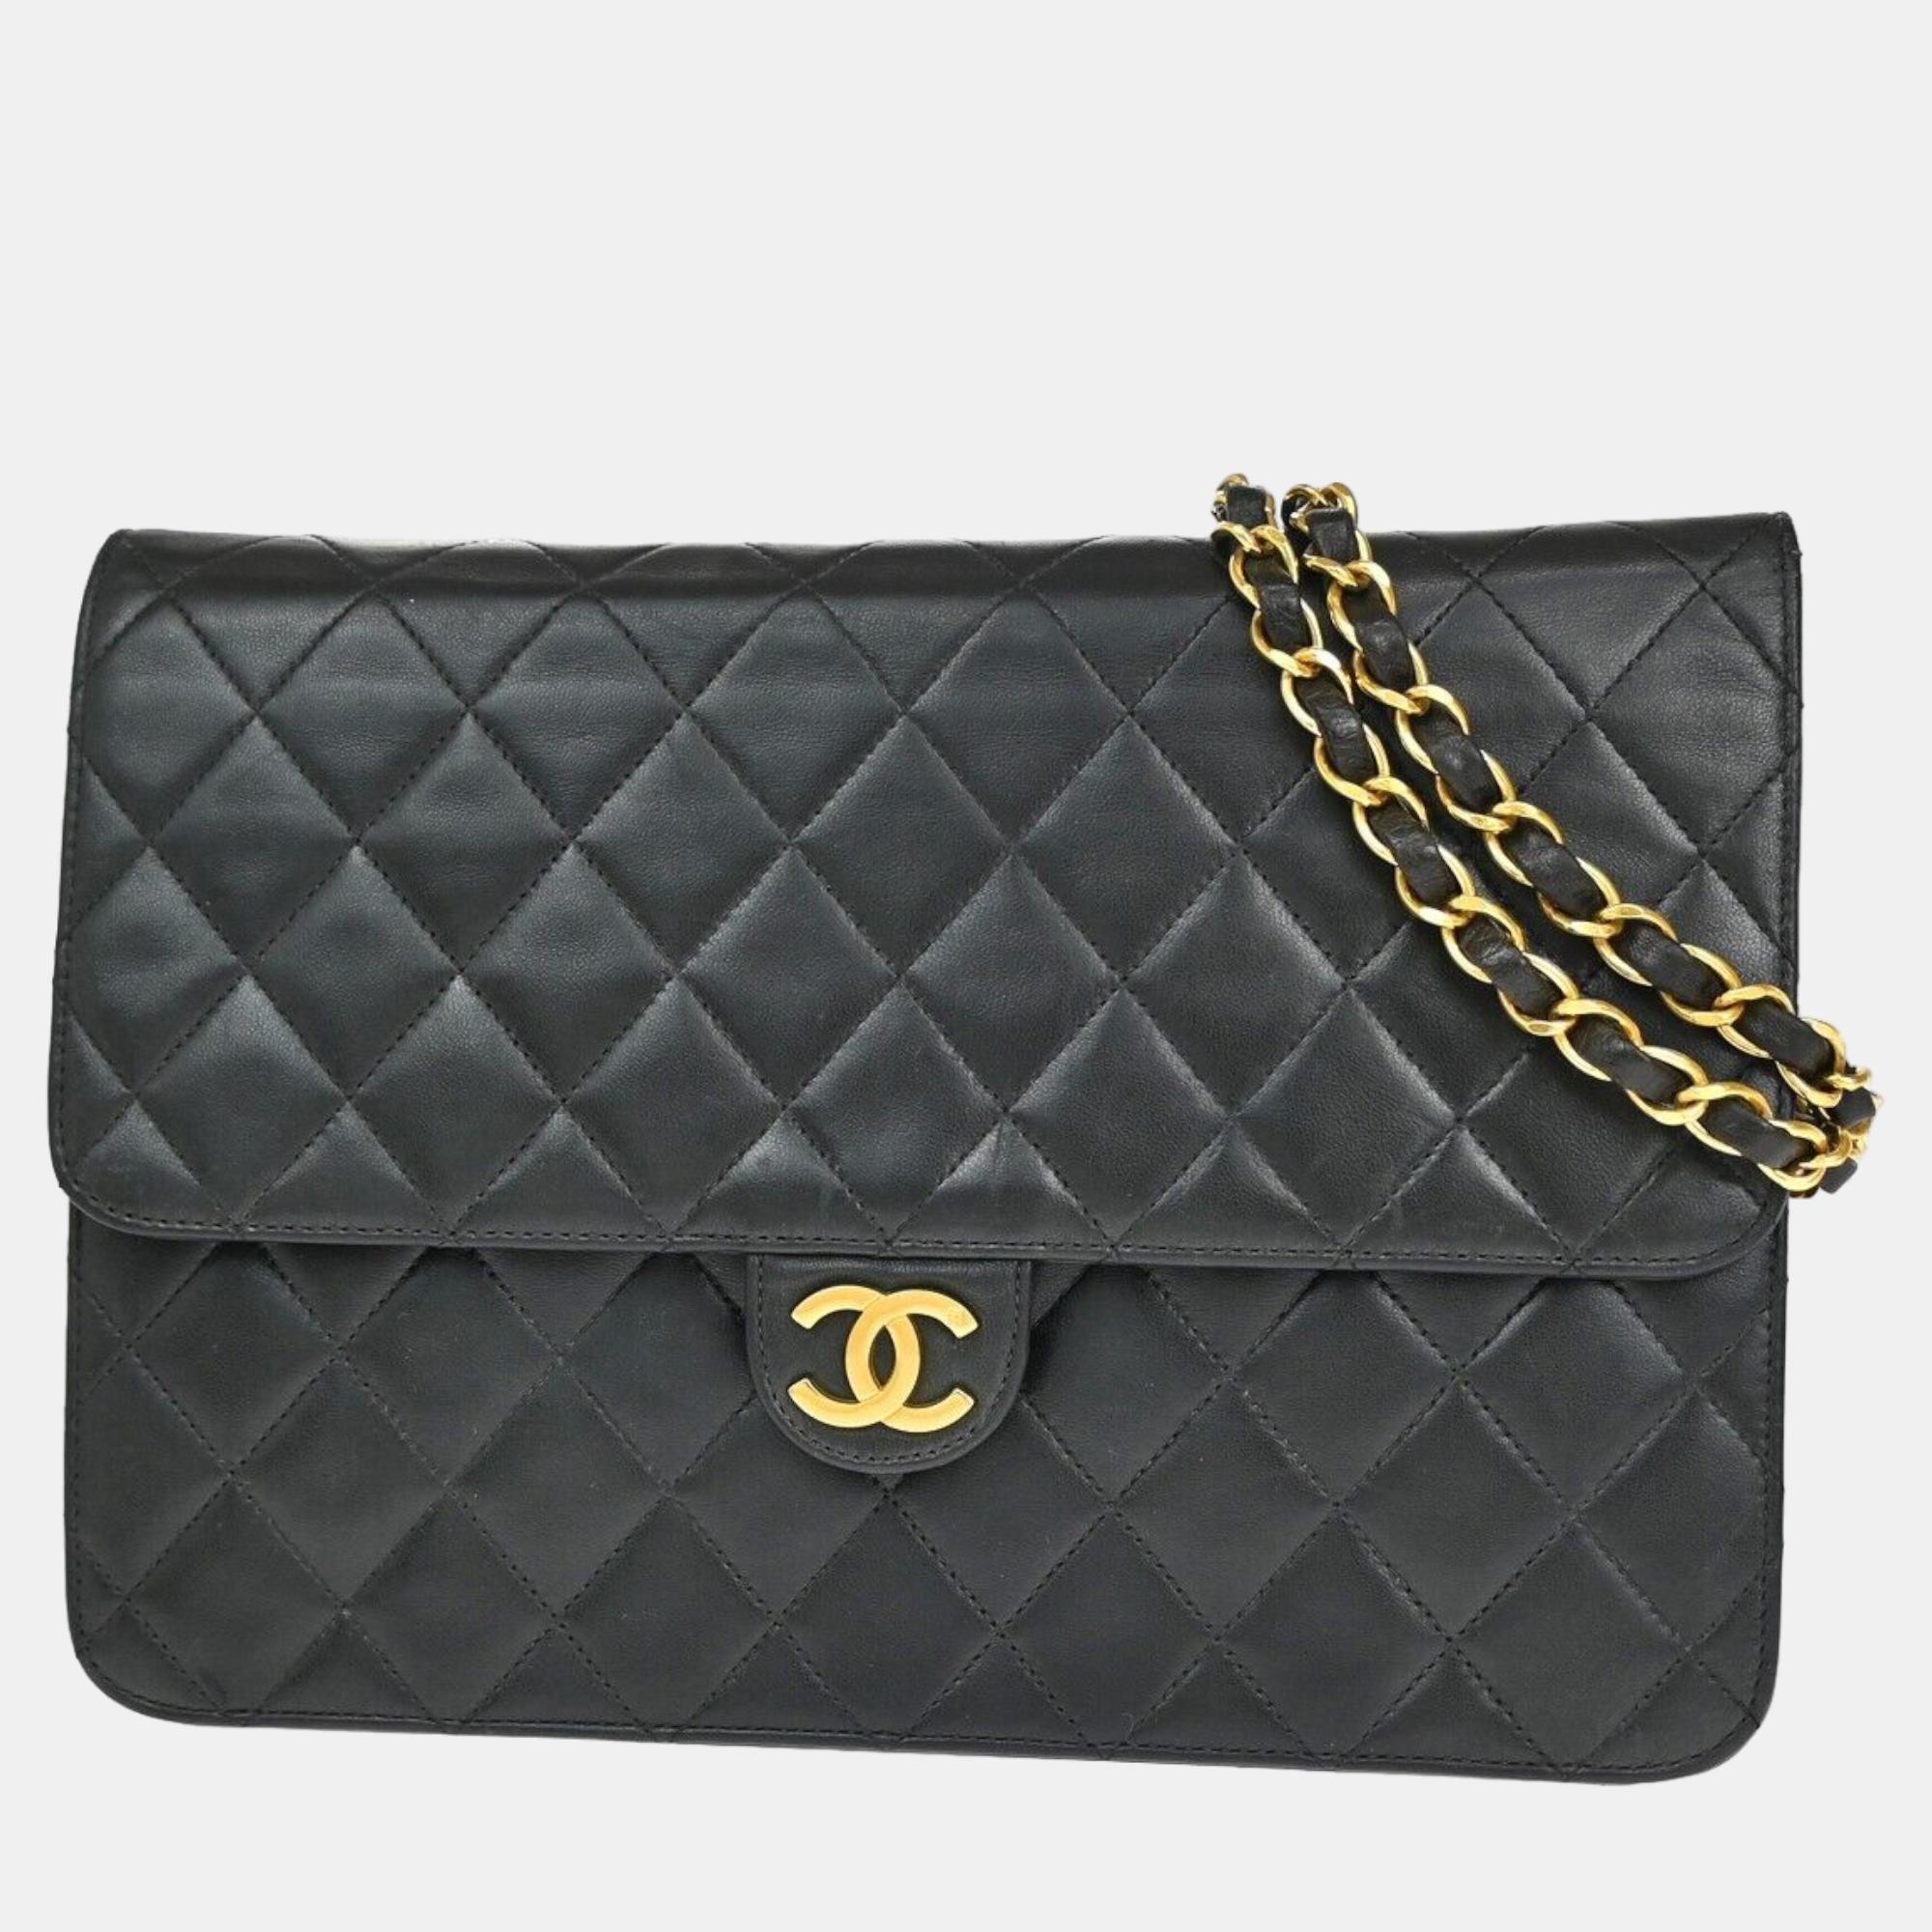 Chanel black leather timeless shoulder bag